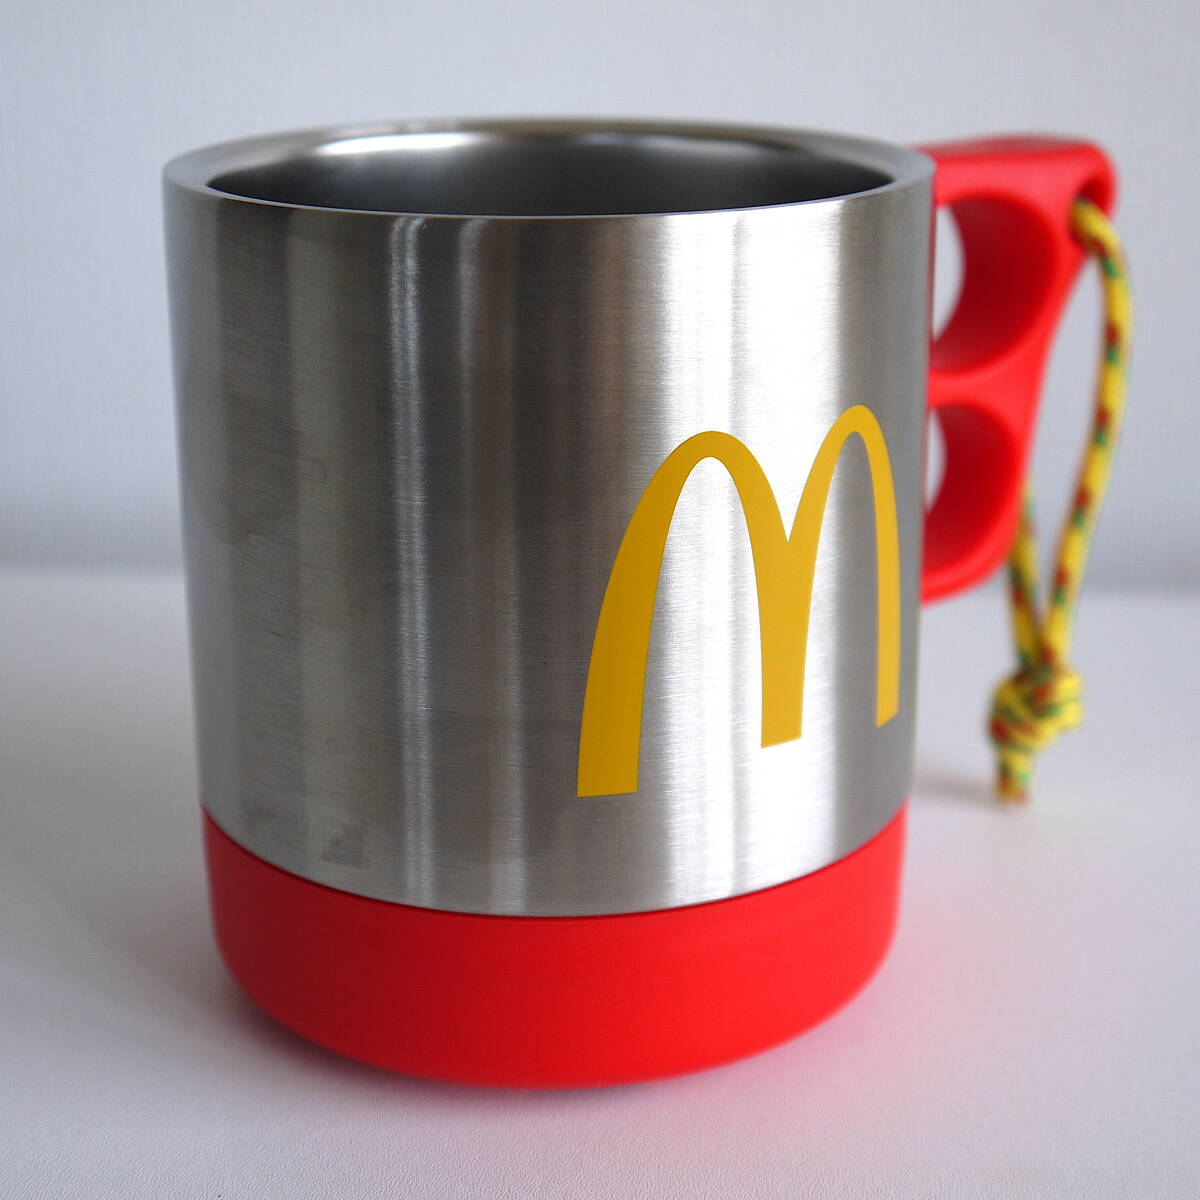 CHUMS × McDonalds Chums × McDonald's кружка 280ml( из нержавеющей стали ) новый товар 